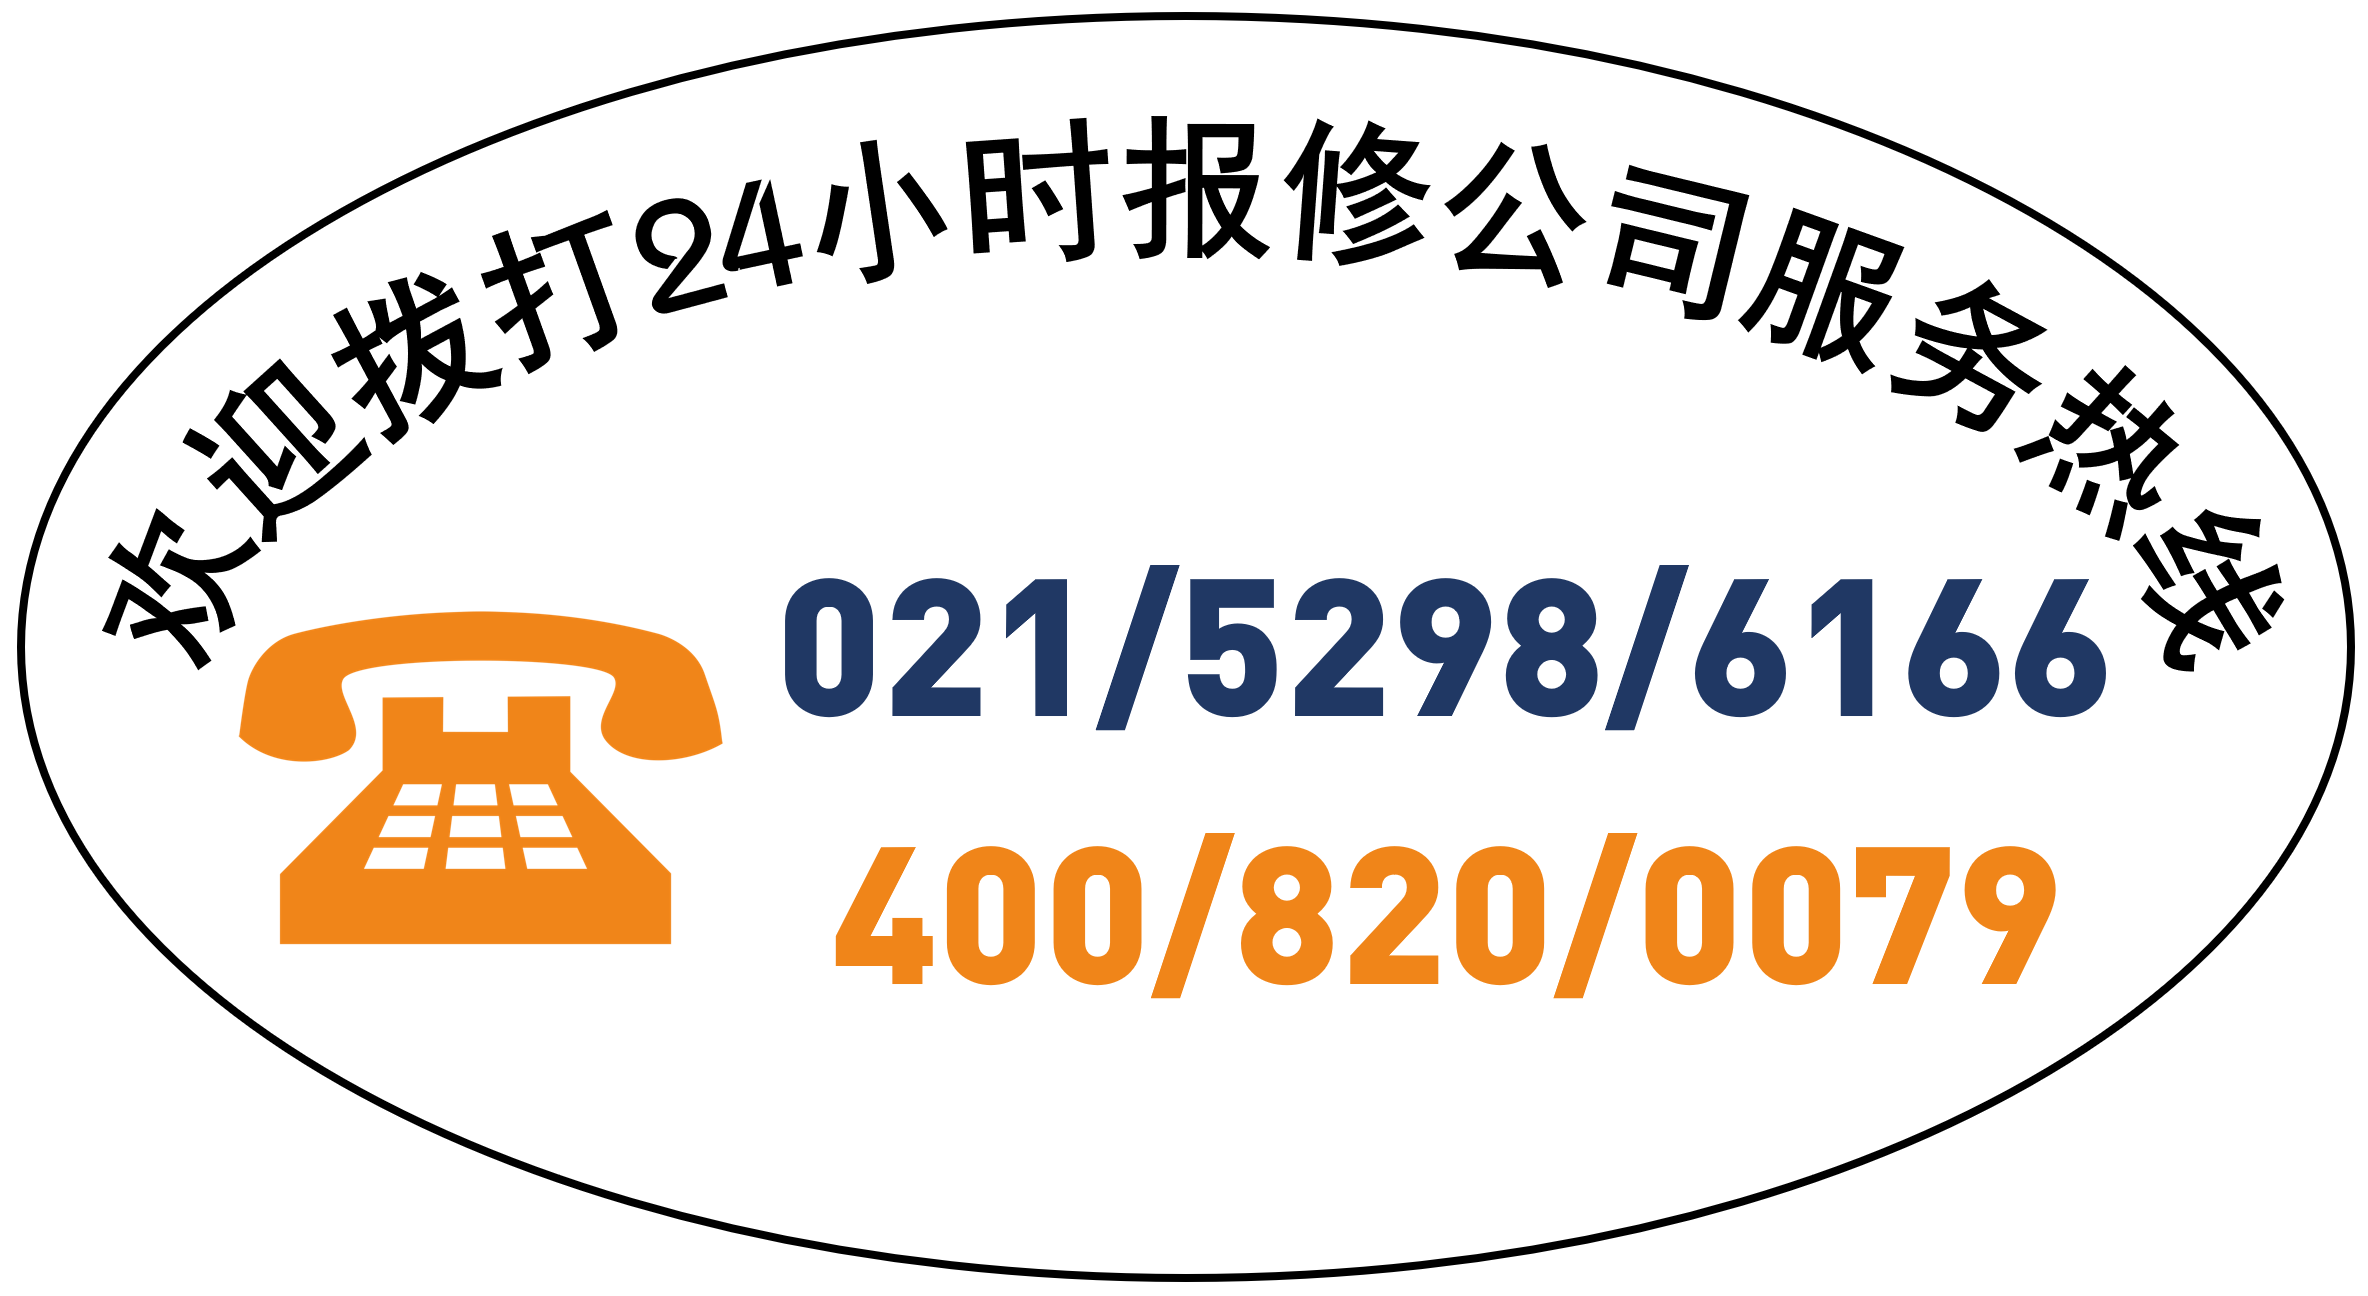 上海吉尼斯保鲜柜服务总部维修电话